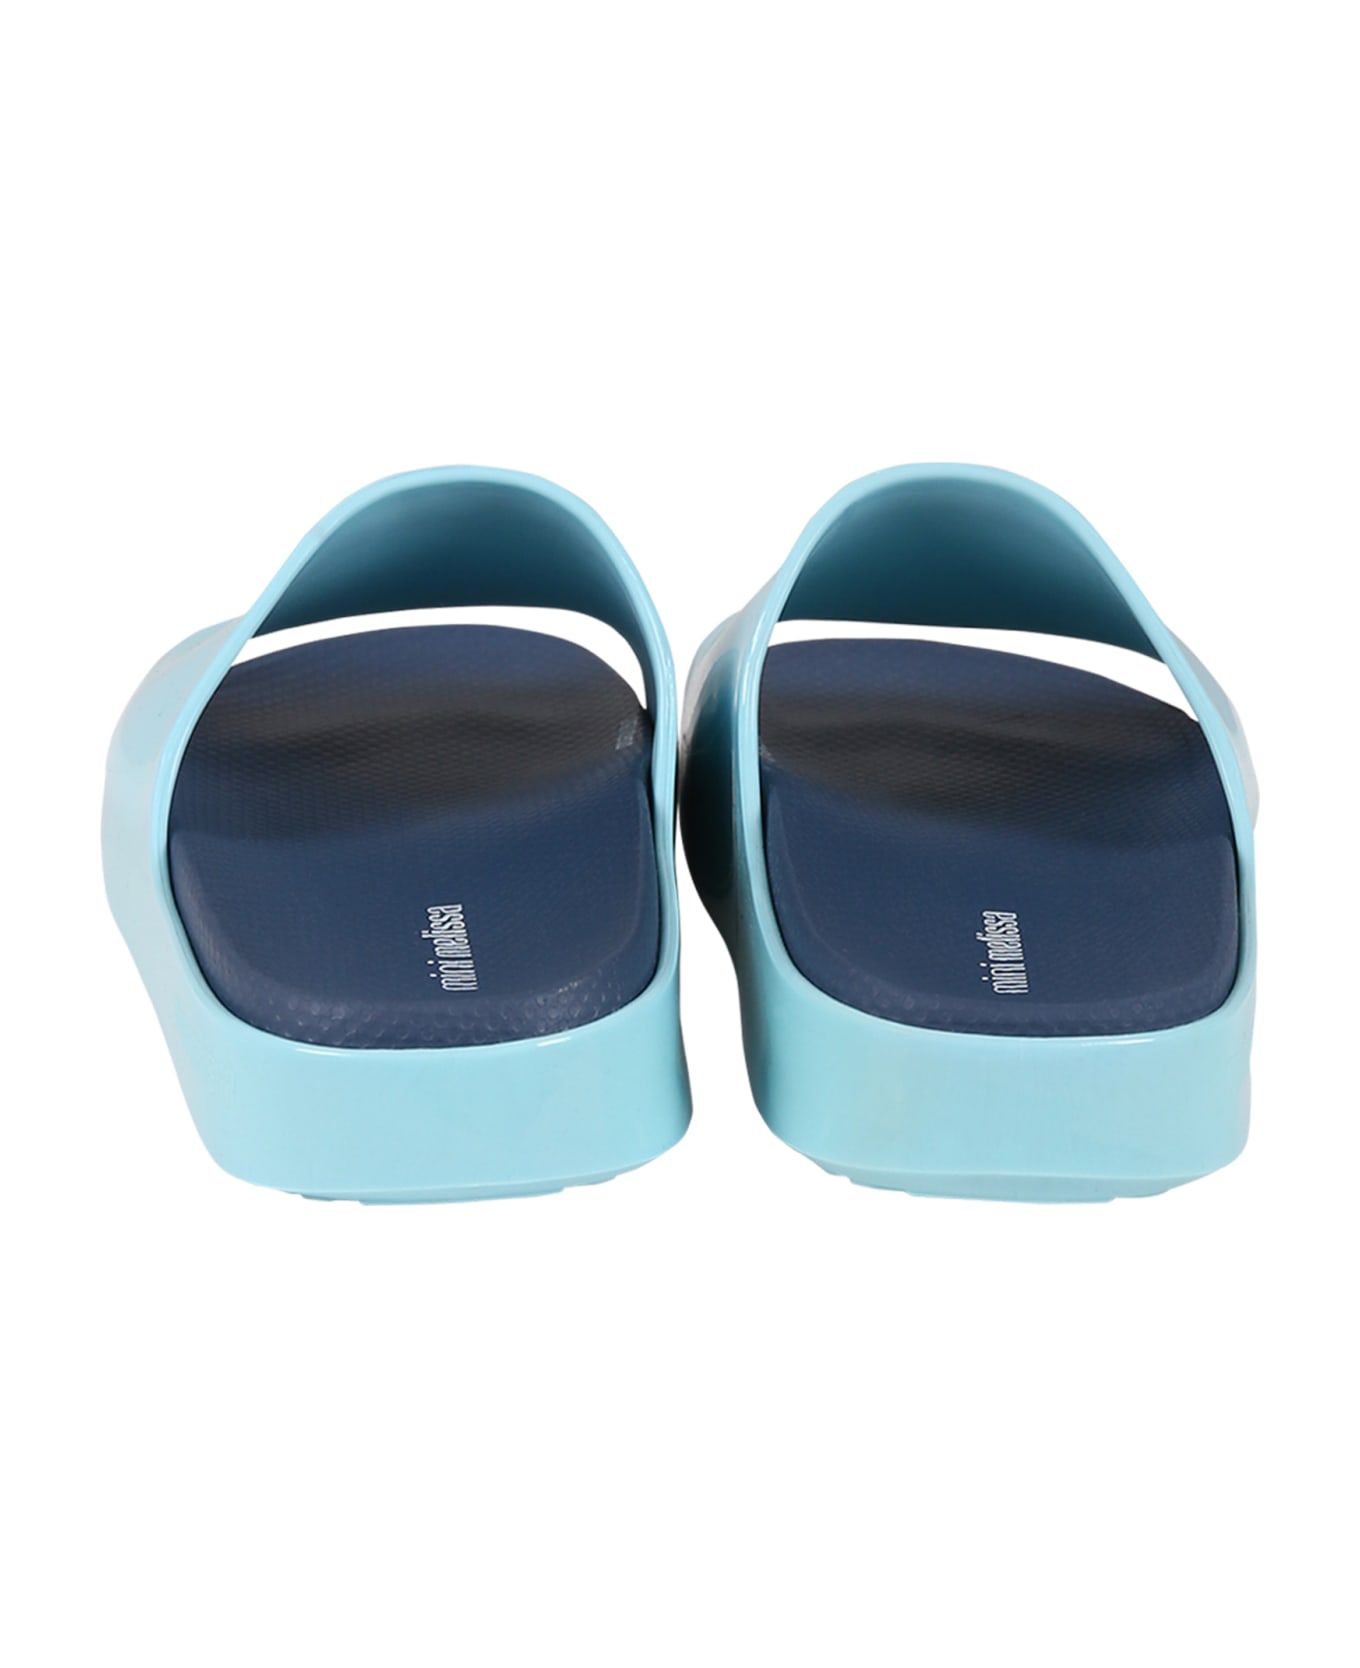 Melissa Light Blue Sandals For Girl With Logo - Light Blue シューズ